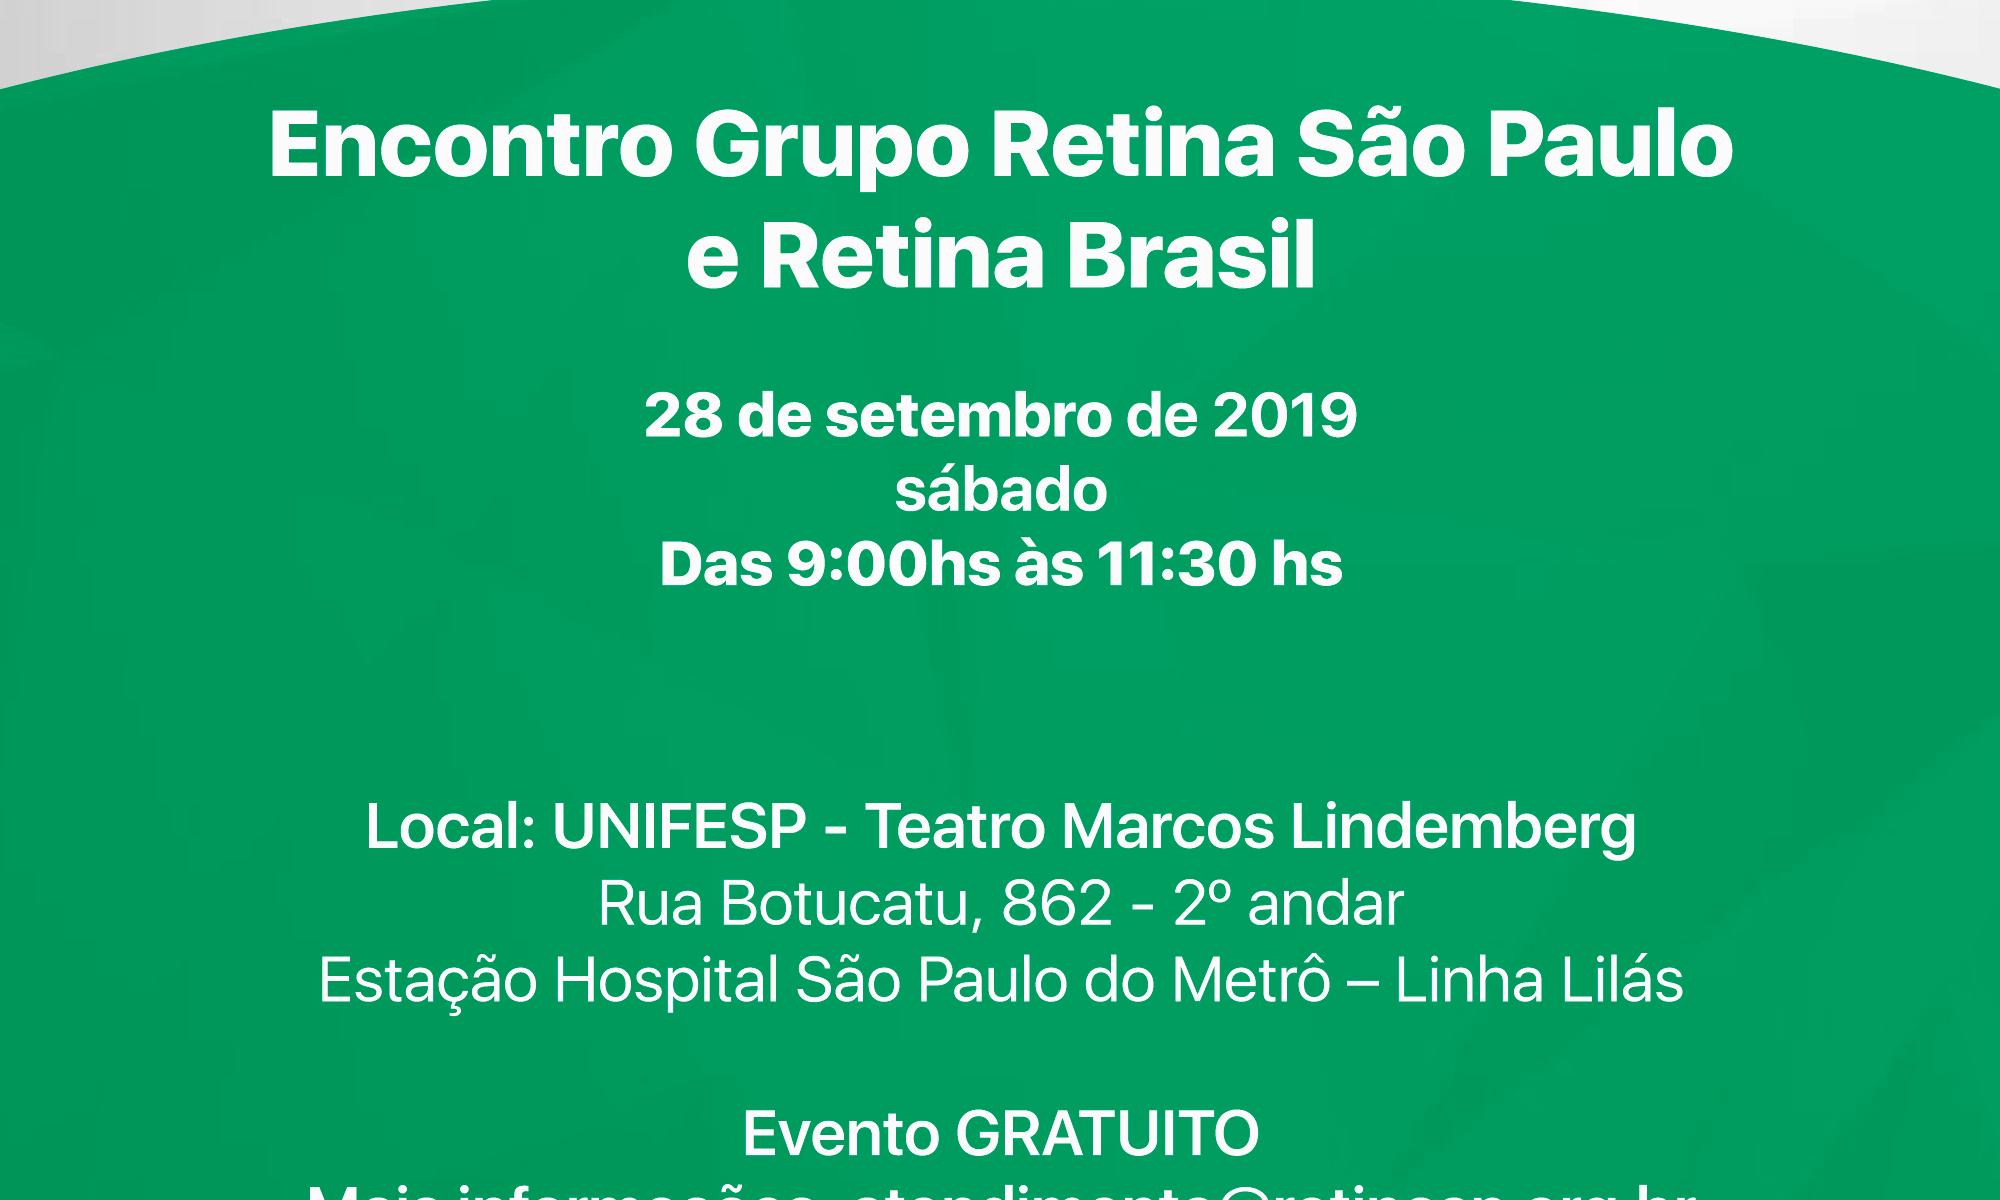 #PraCegoVer imagem em tons de cinza e verde com as informações básicas do Encontro e as logos da Retina Brasil e do Grupo Retina São Paulo.